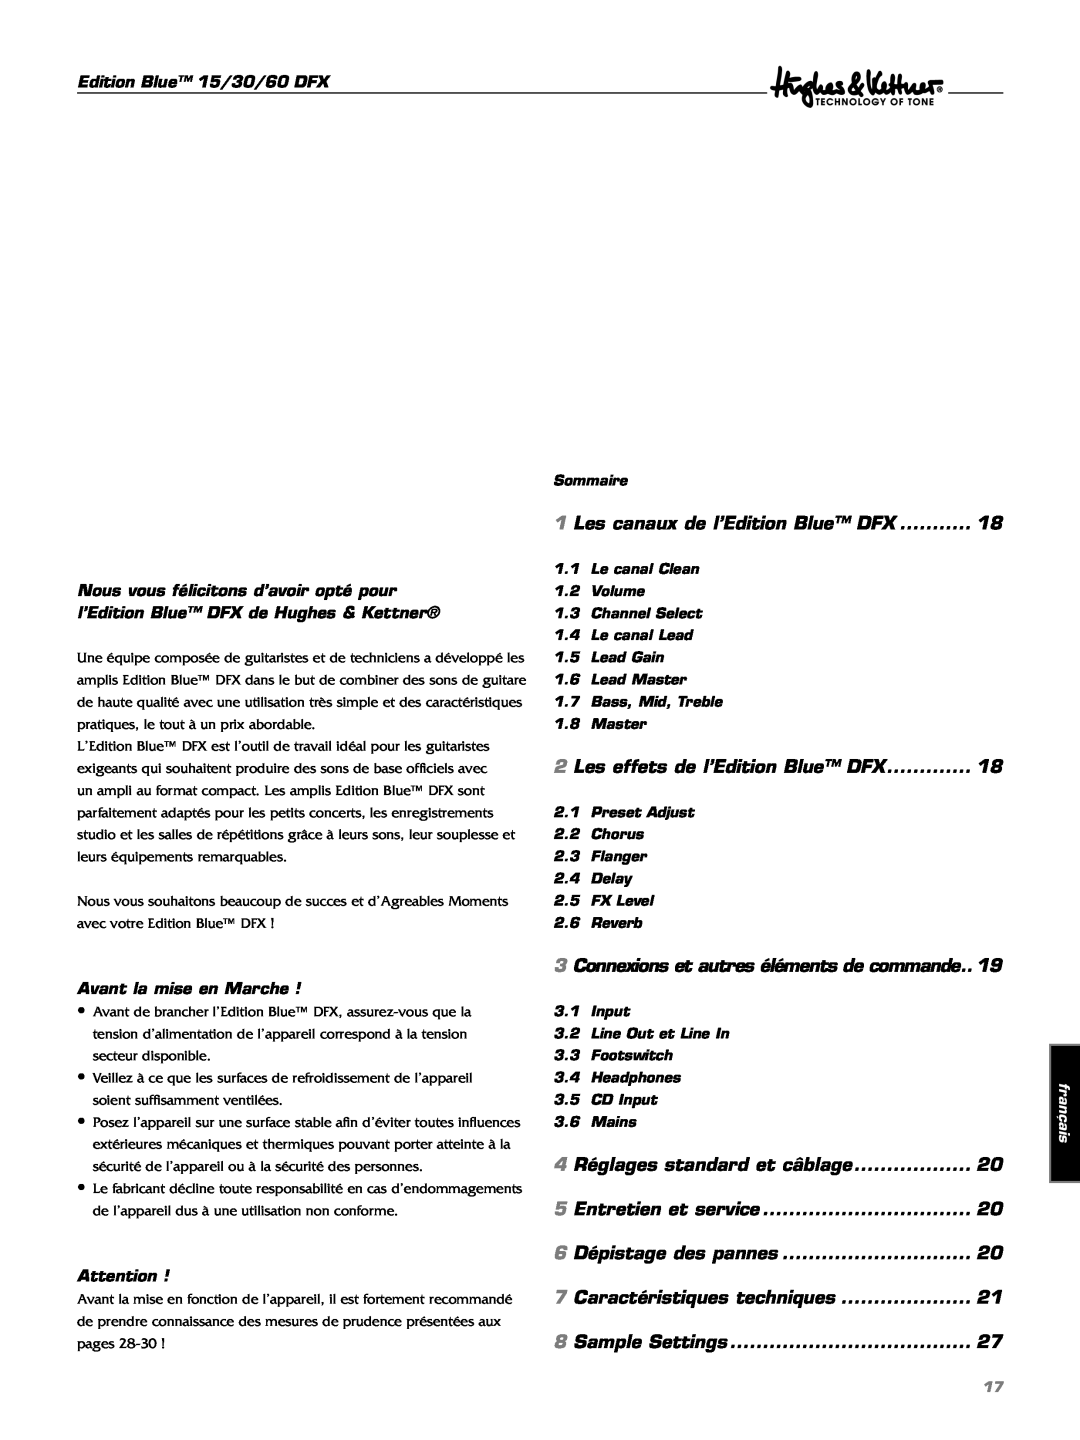 Hughes & Kettner manual Les canaux de l’Edition Blue DFX 